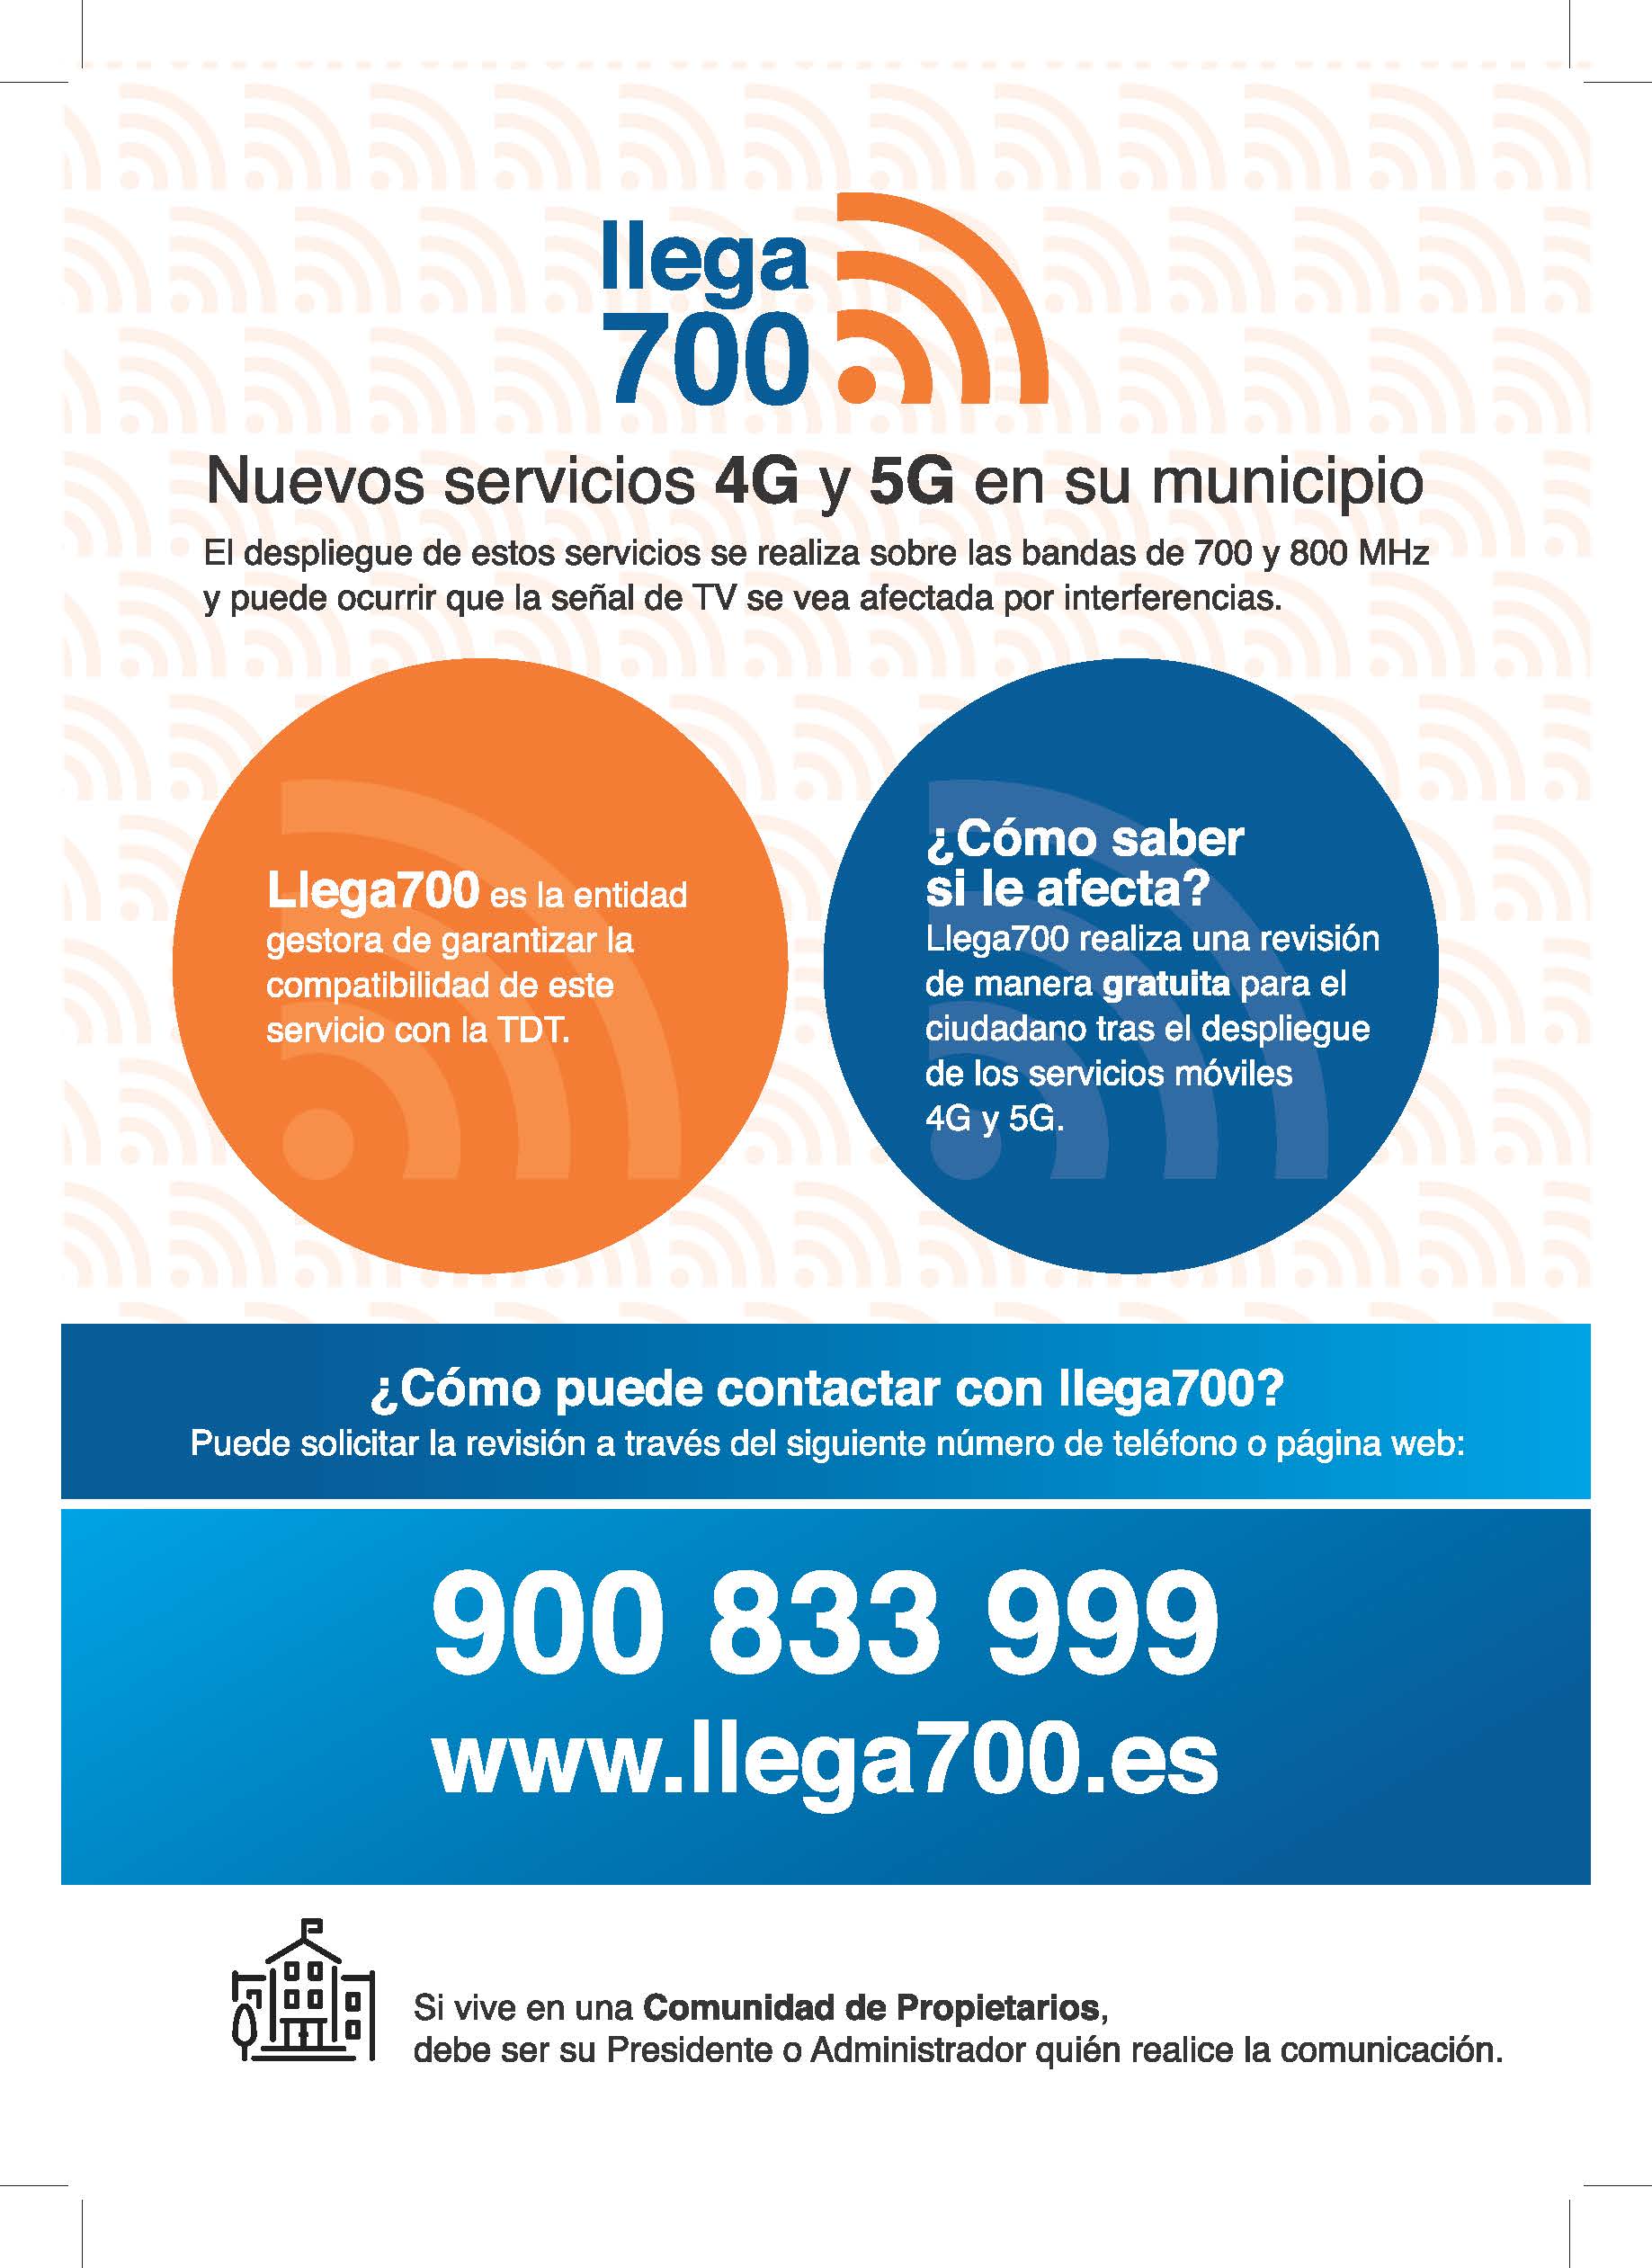 LLEGA 700 - COMUNICACIÓN ENCENDIDO DE NODO